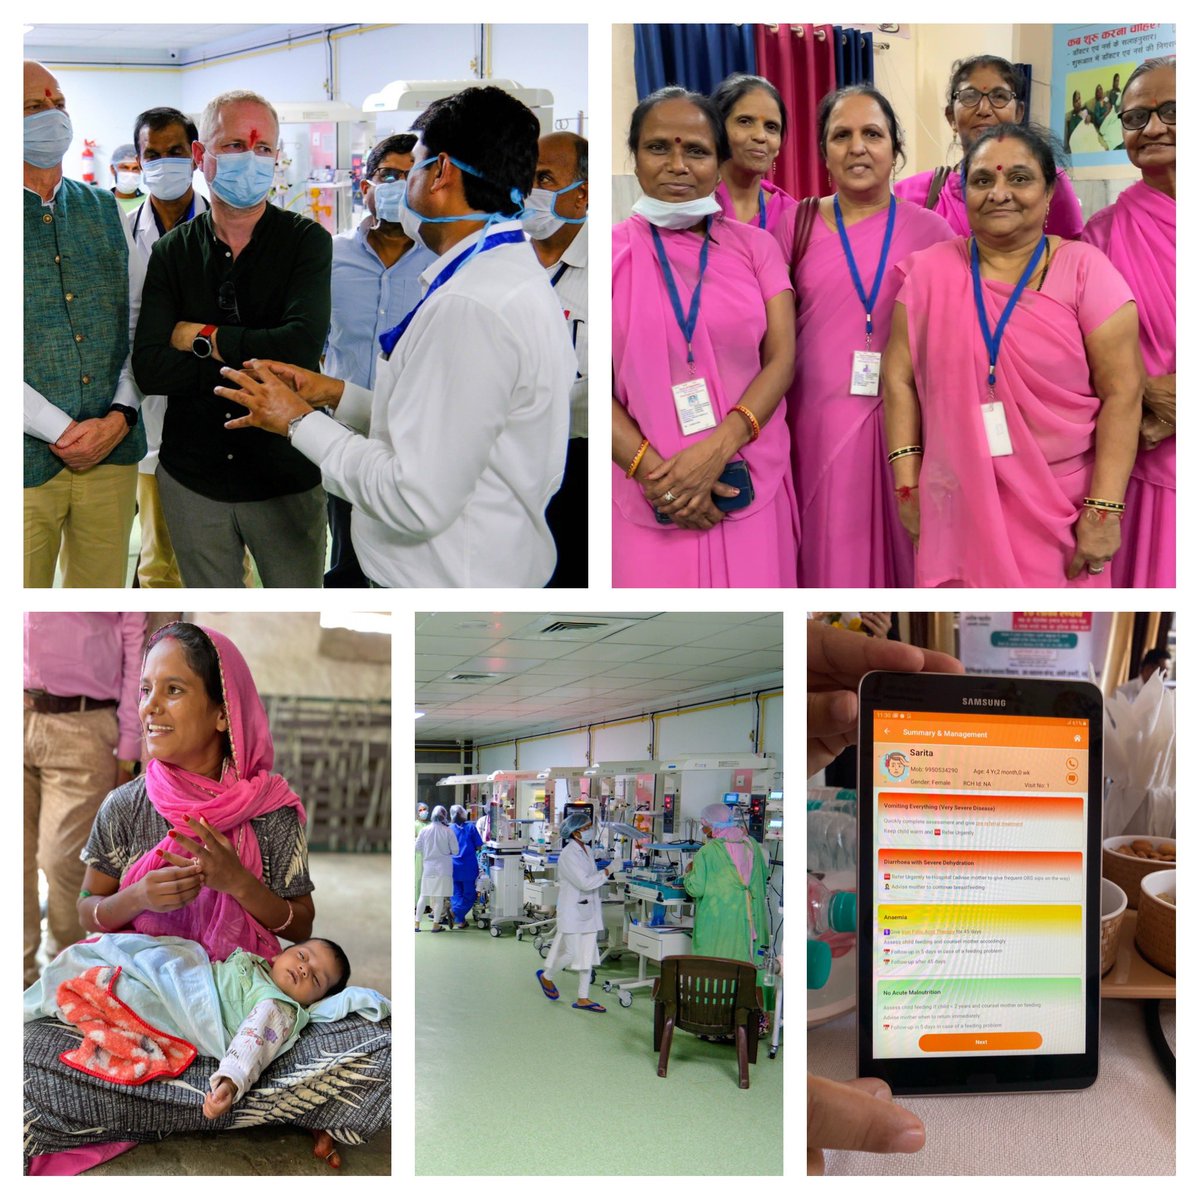 Helsesamarbeidet mellom Norge og India vart starta av @jensstoltenberg og @toregodal i 2006, og pågår enno. Eit innovativt program for betre mødrehelse og fødselsomsorg. Særs viktig for den kraftige nedgangen i barne- og mødredødelighet i India. 2014: 45 pr 1000 2022: 20 pr 1000